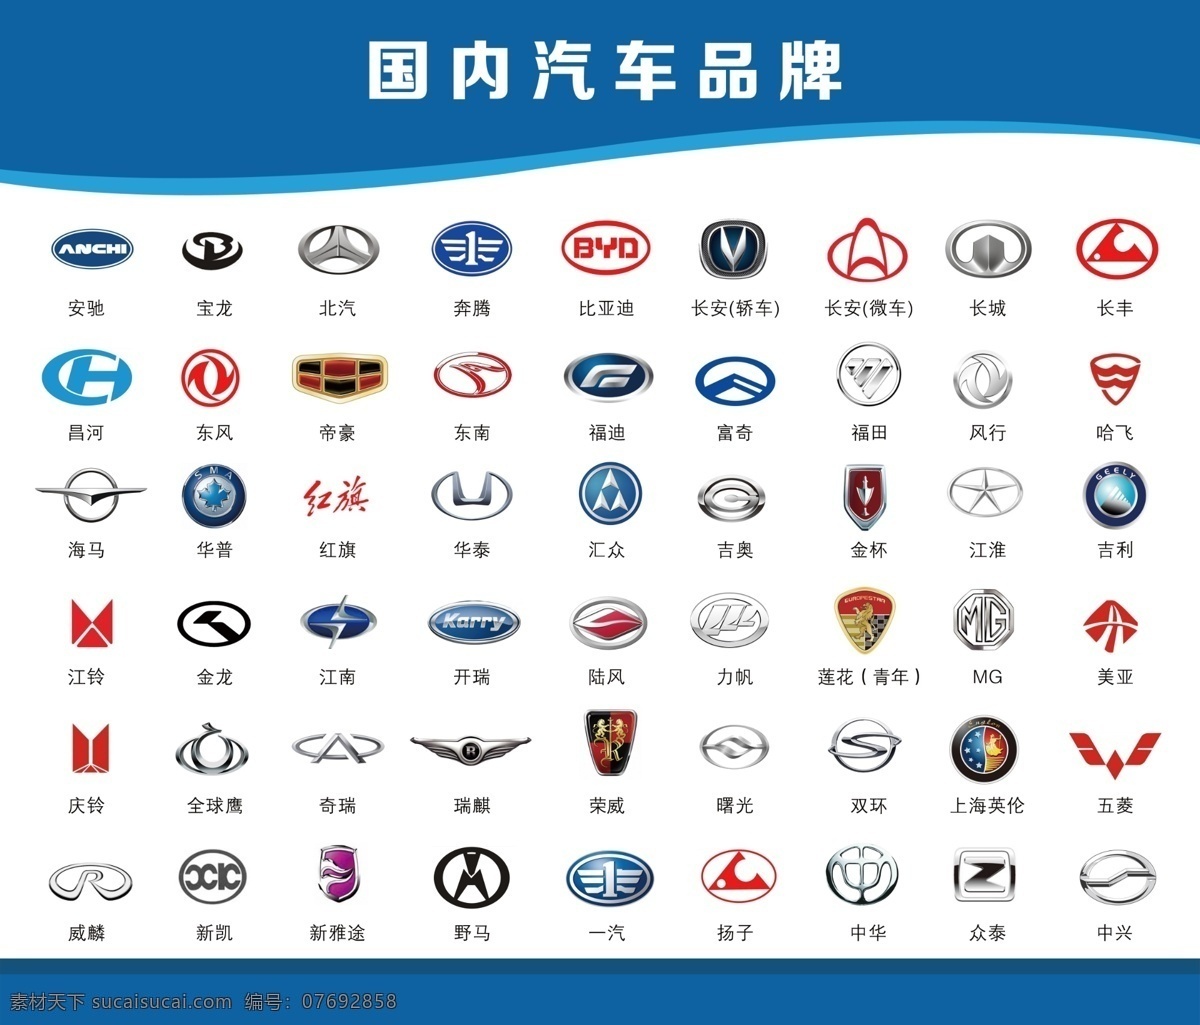 国内 汽车 品牌 大全 国内汽车品牌 汽车标识大全 国产汽车品牌 logo 奇瑞比亚迪 标志图标 其他图标